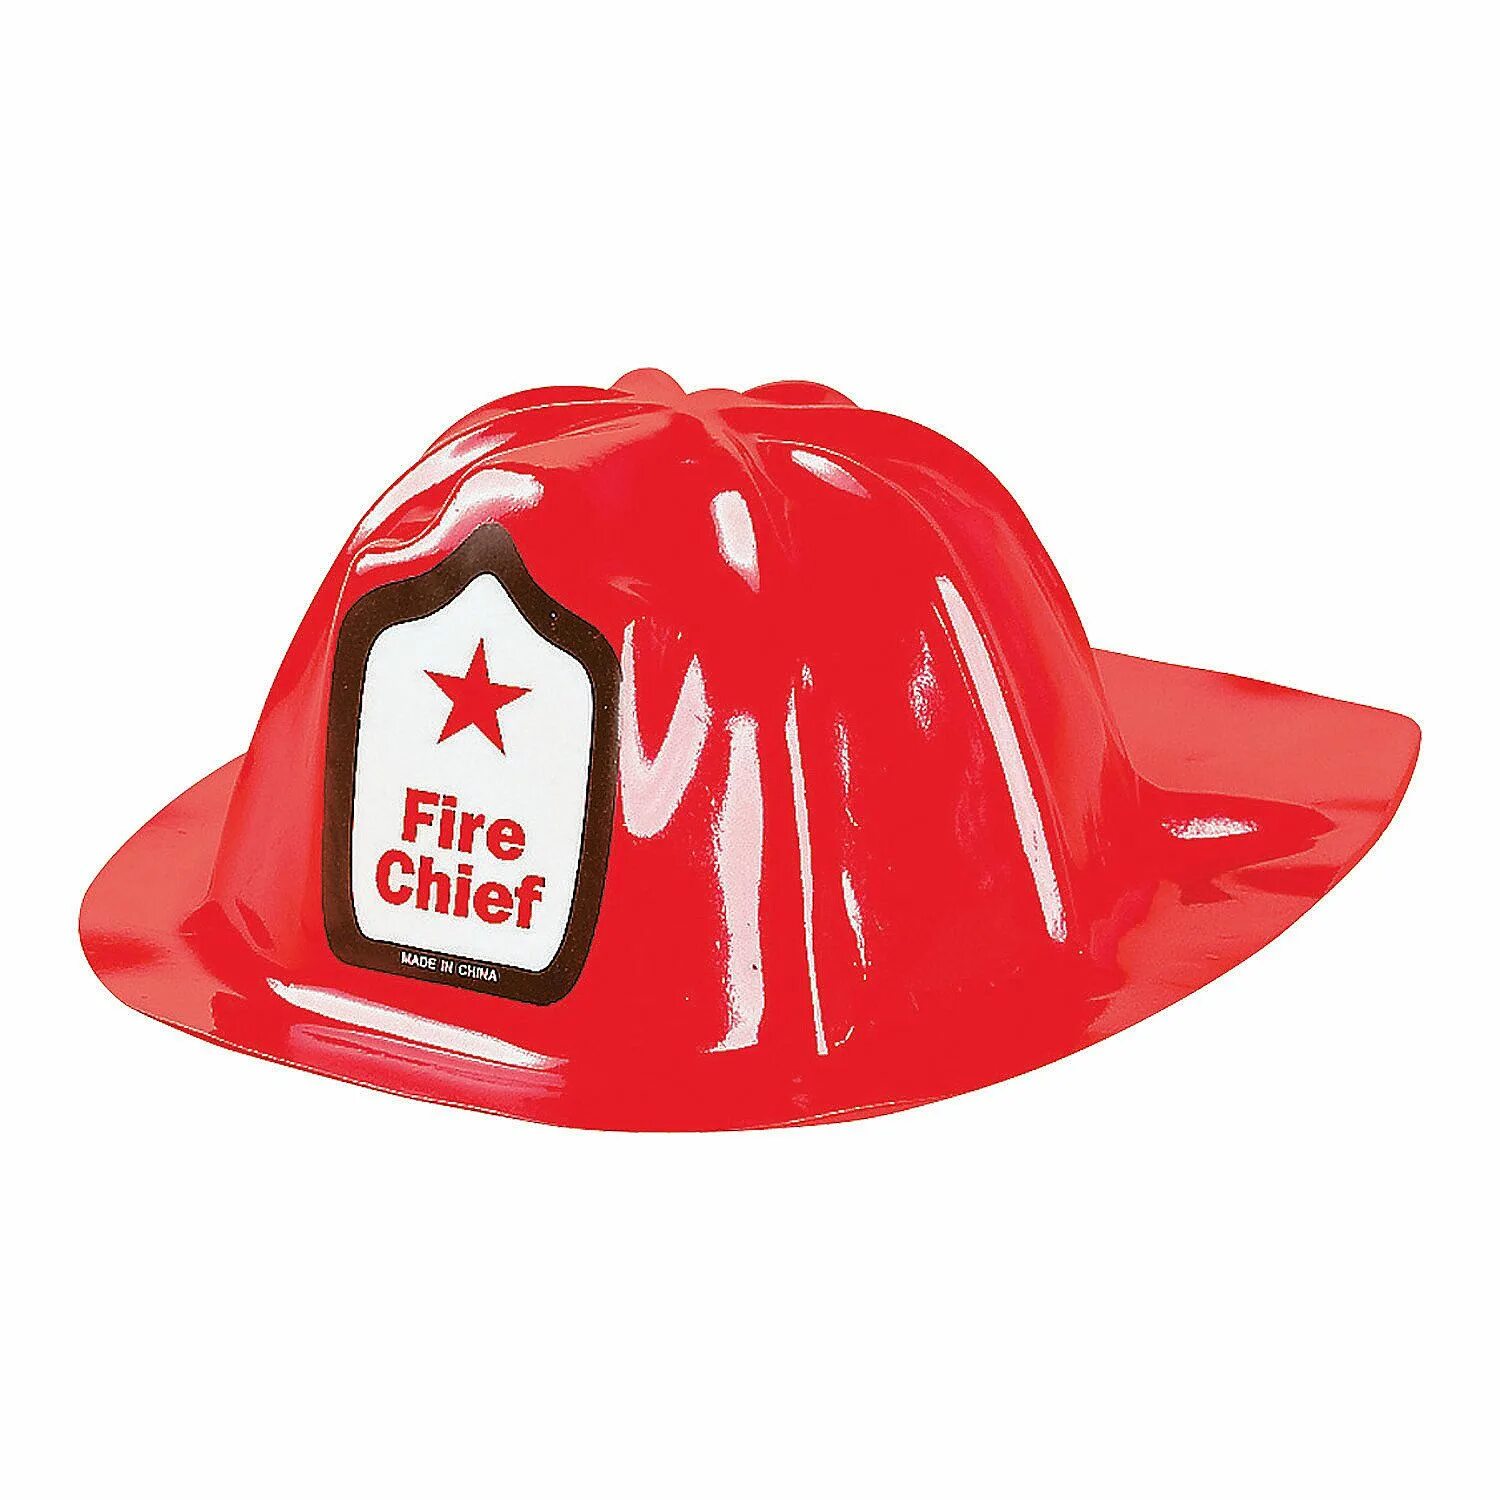 Каска пожарного. Каска пожарника. Каска пожарного для детей. Шляпа пожарного. Каска в форме шляпы